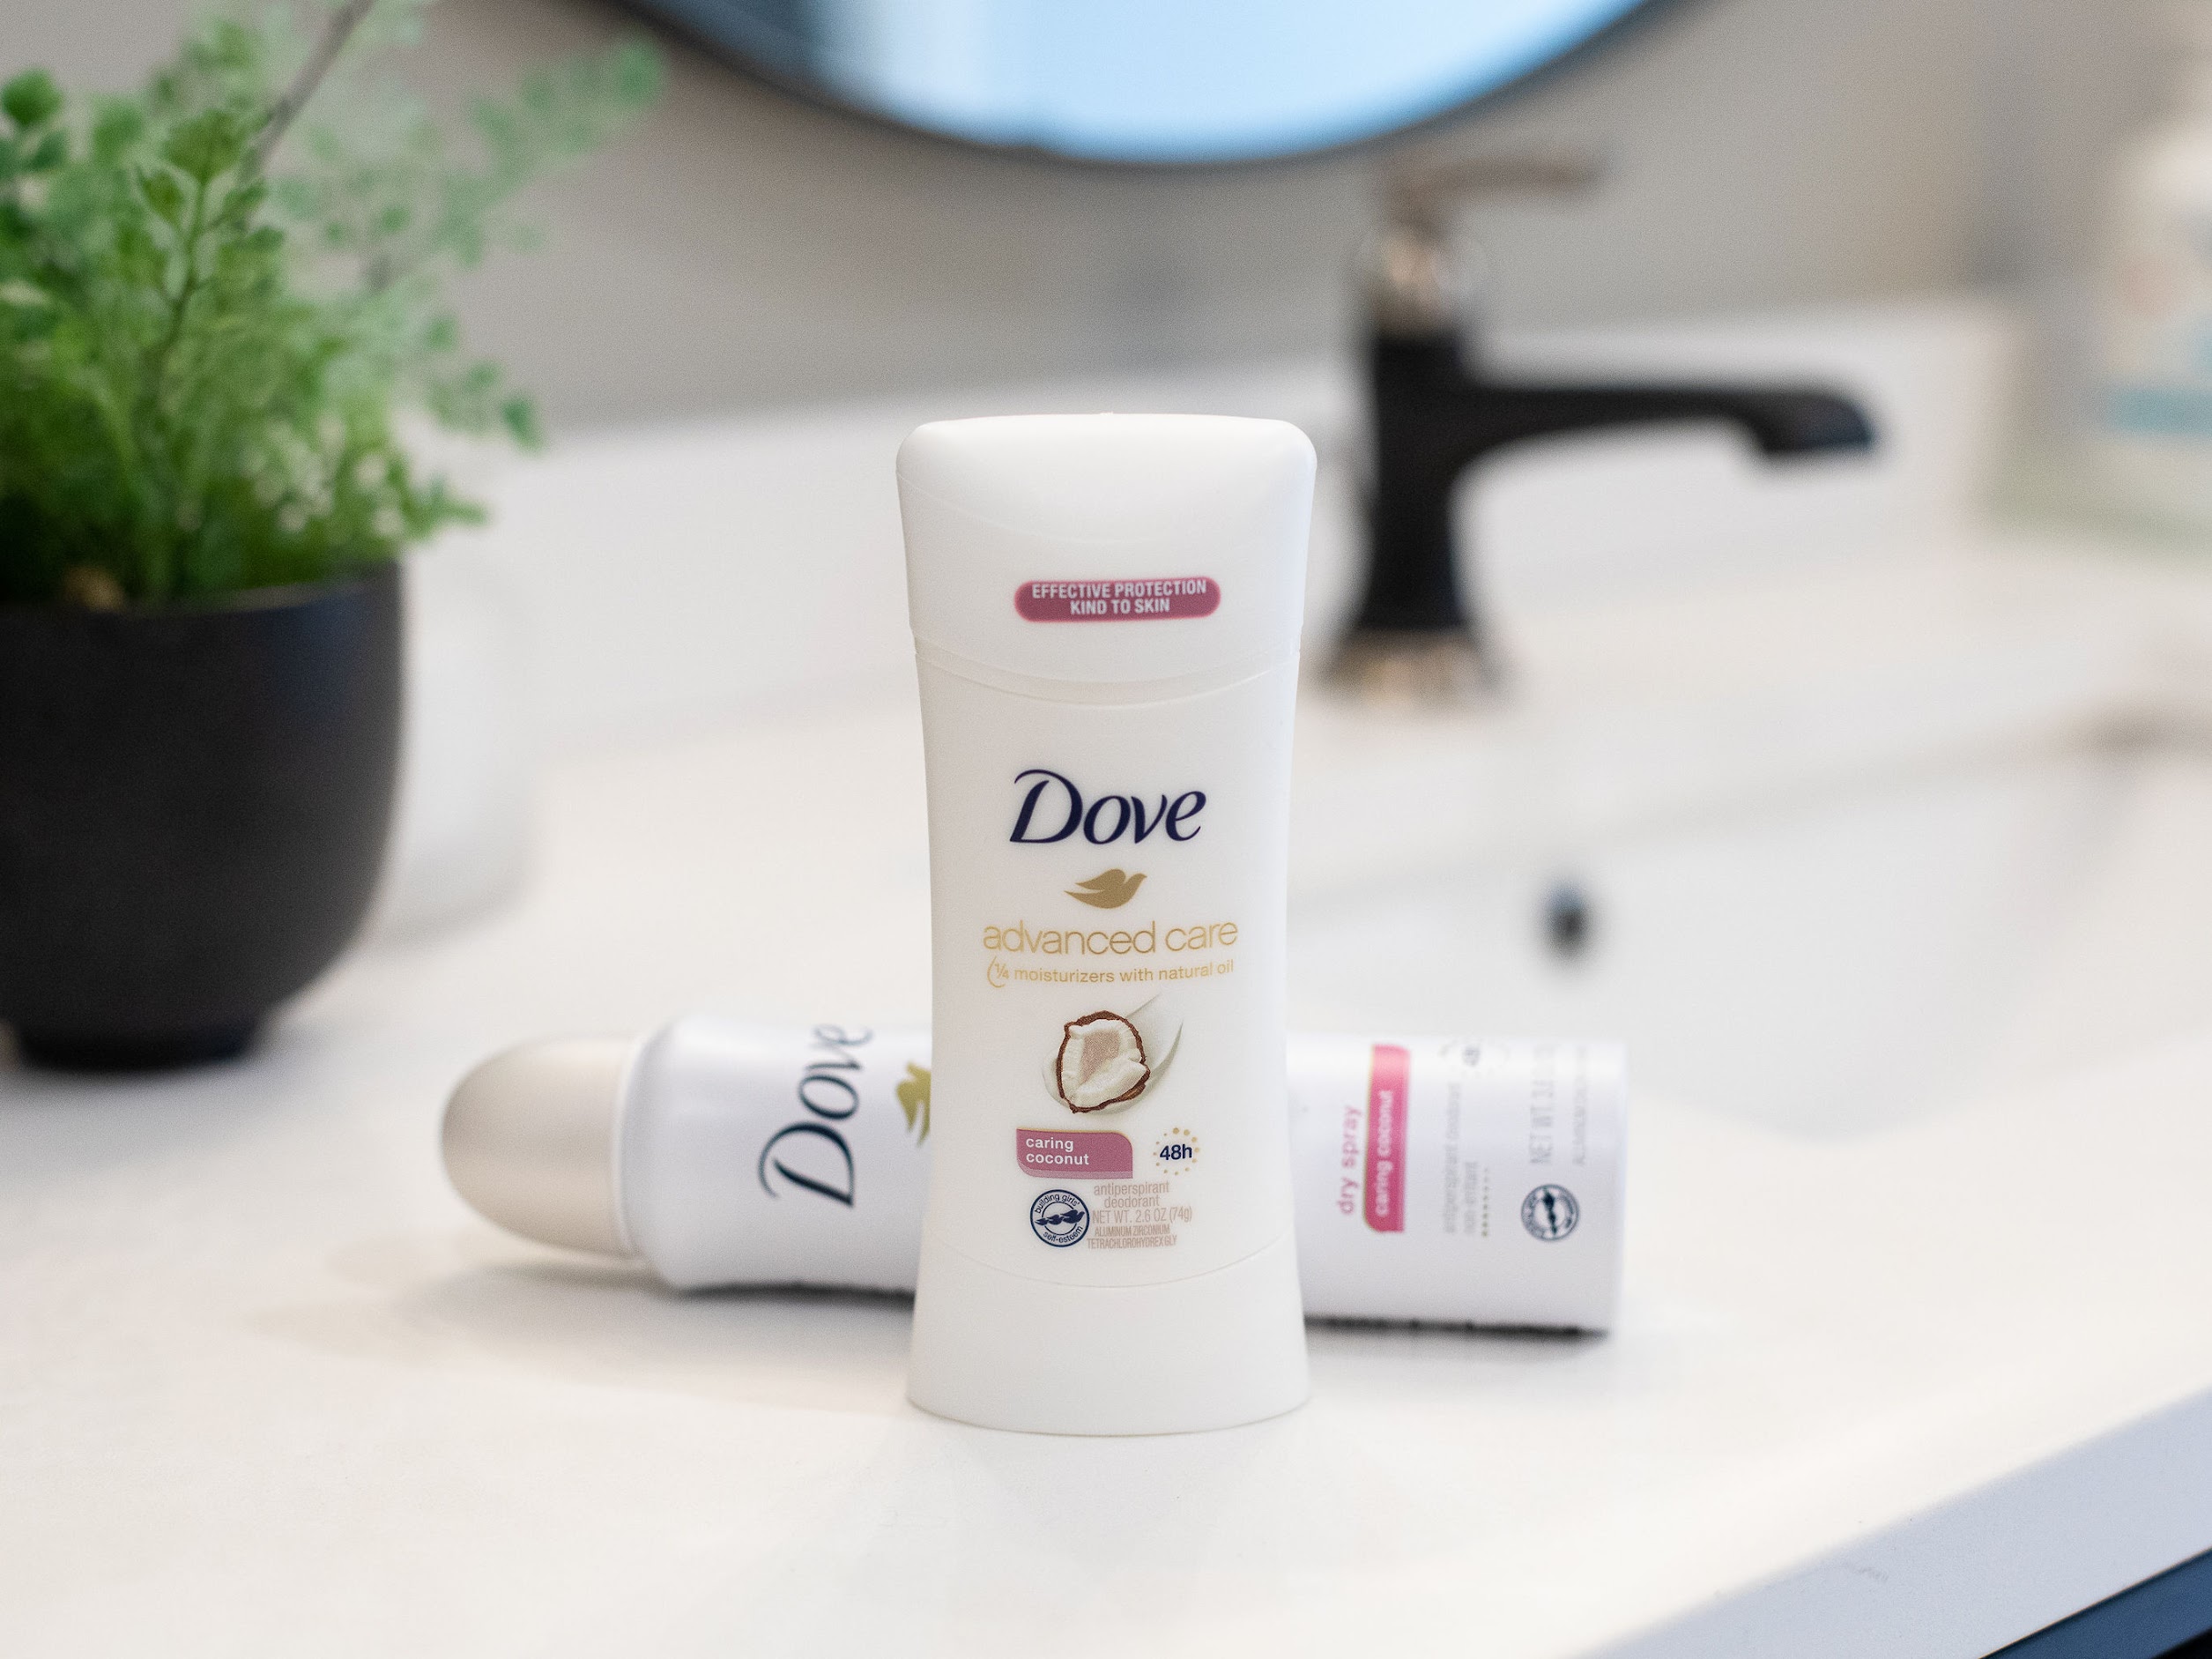 Dove Advanced Care Deodorant Just $3.49 At Publix (Regular Price $7.49)